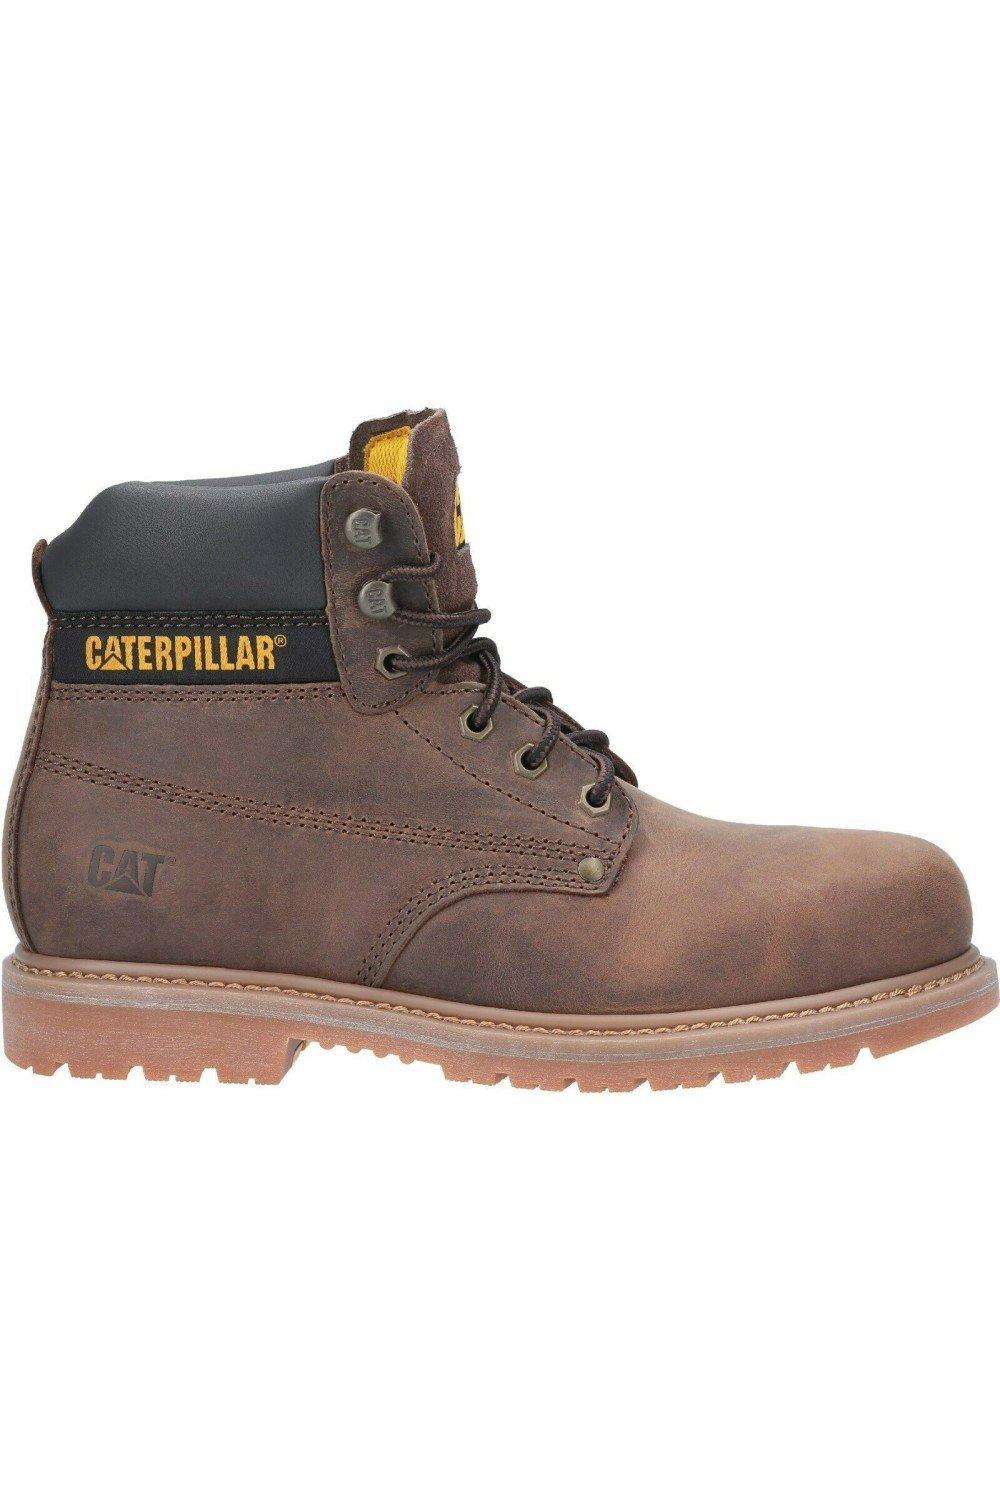 Кожаные защитные ботинки Powerplant S3 Caterpillar, коричневый